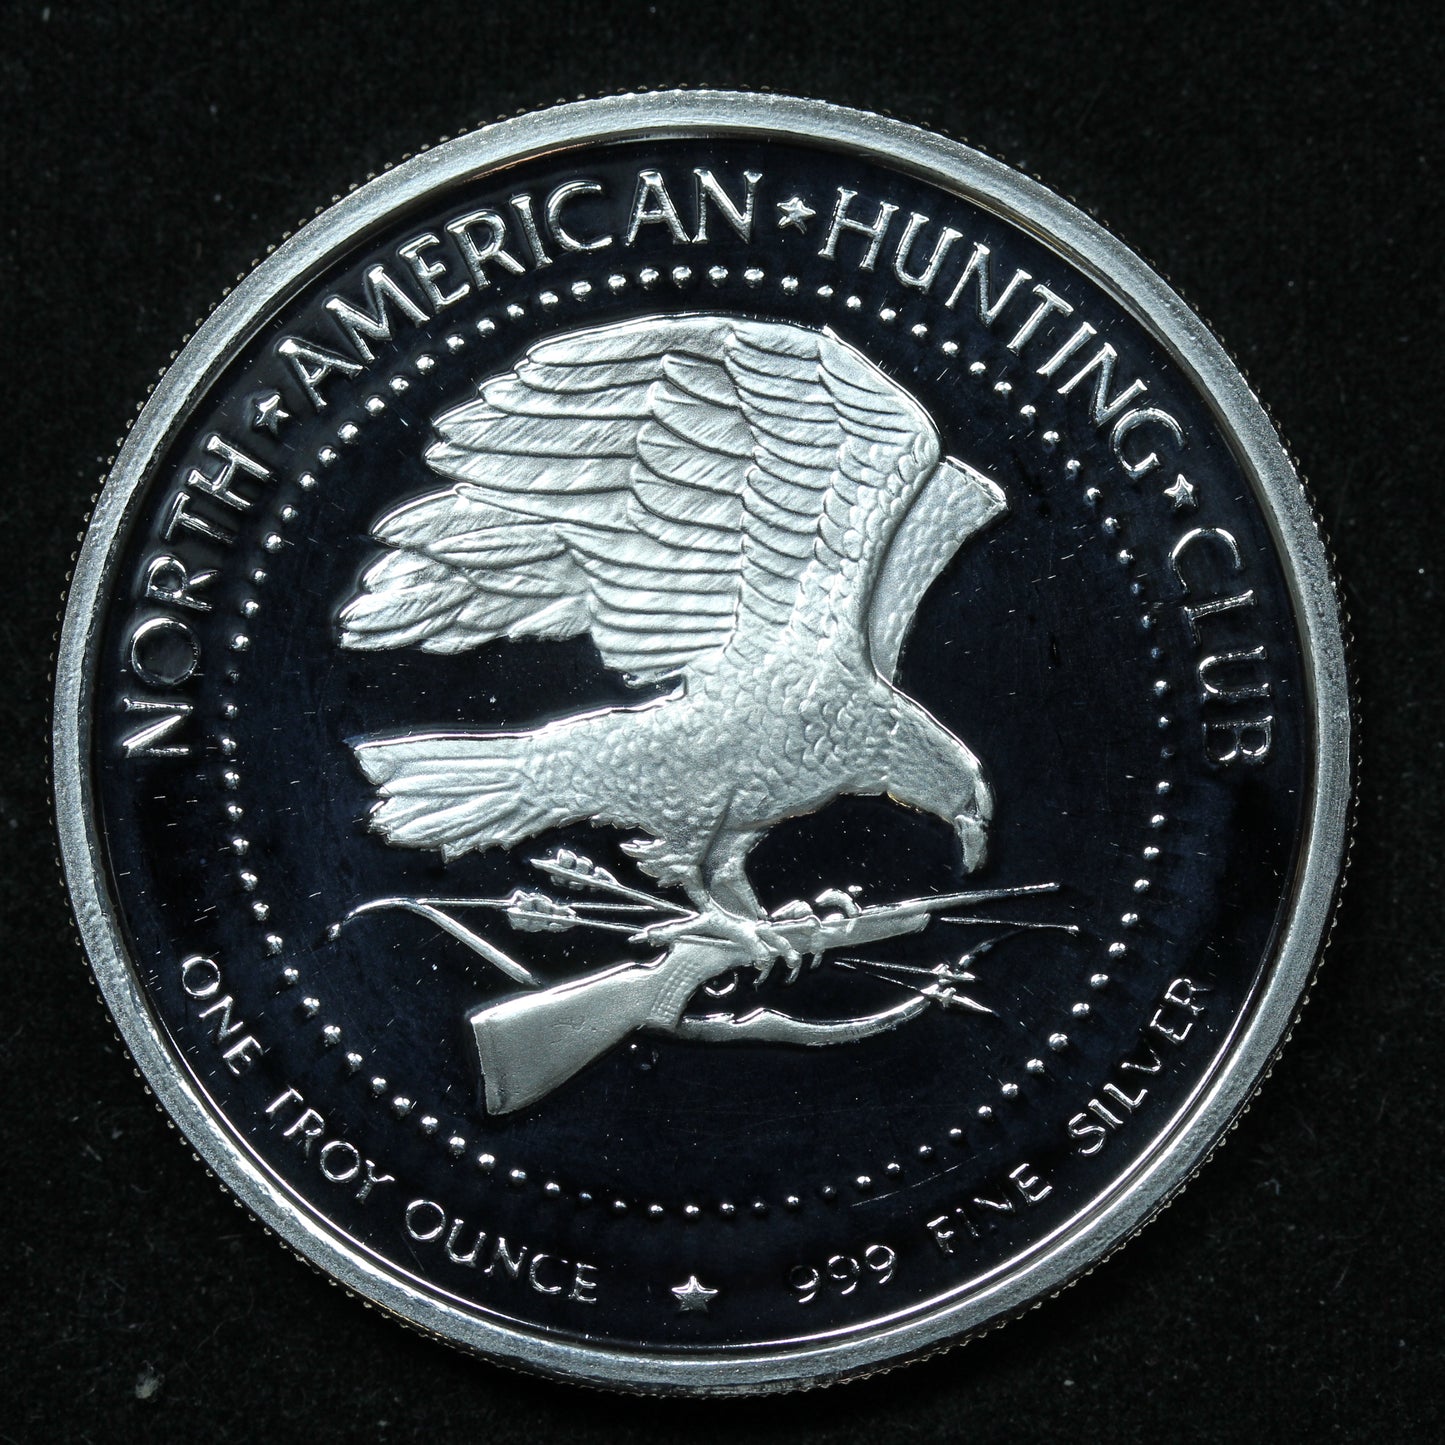 1 oz .999 Fine Silver - North American Hunting Club - Oregon State Record w/ Capsule